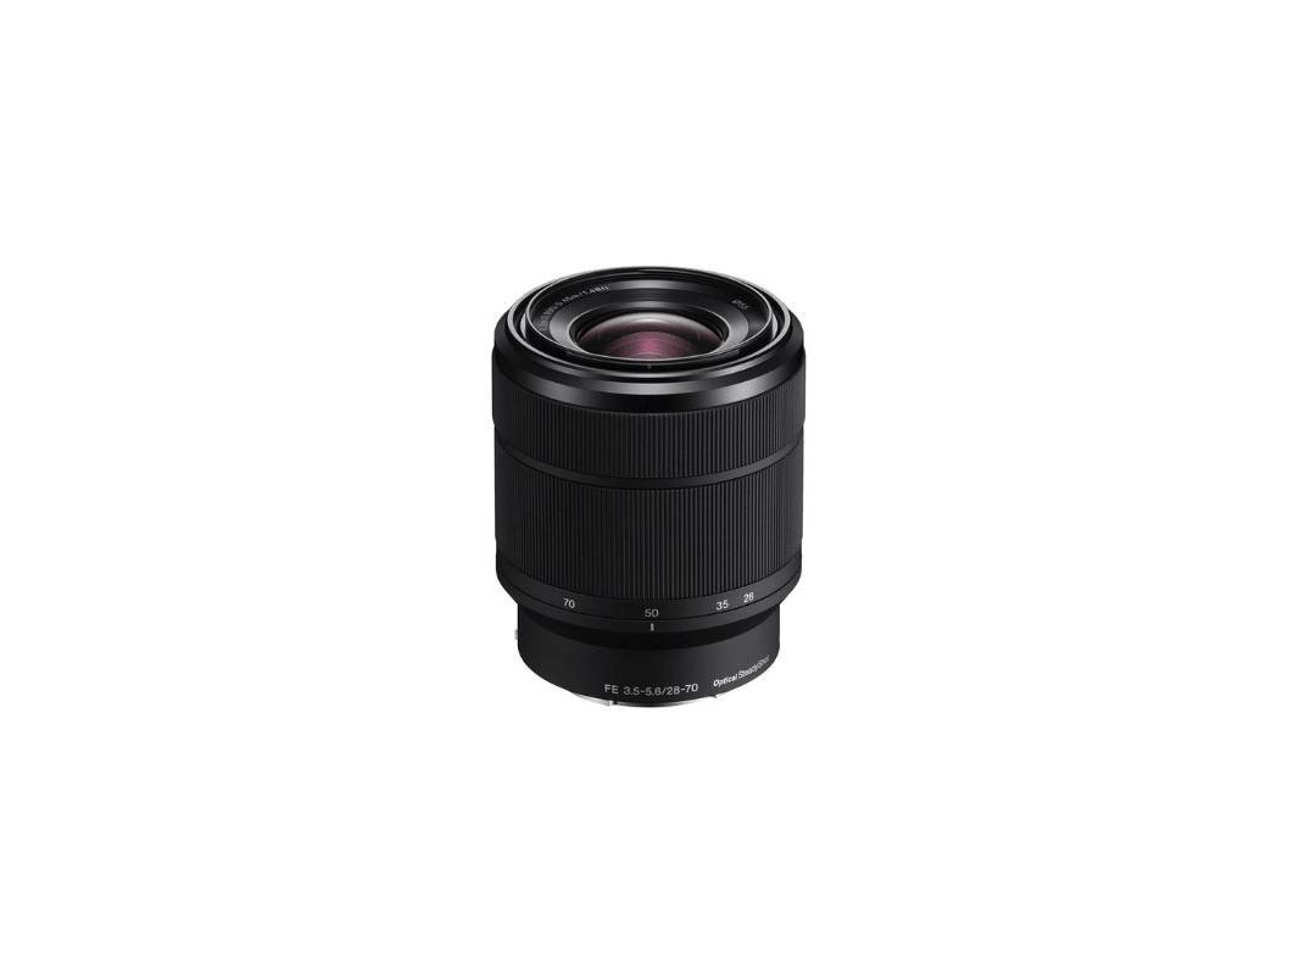 Rent Sony FE 28-70mm f/3.5-5.6 OSS Lens from Derek O for $2.70 - 21/day